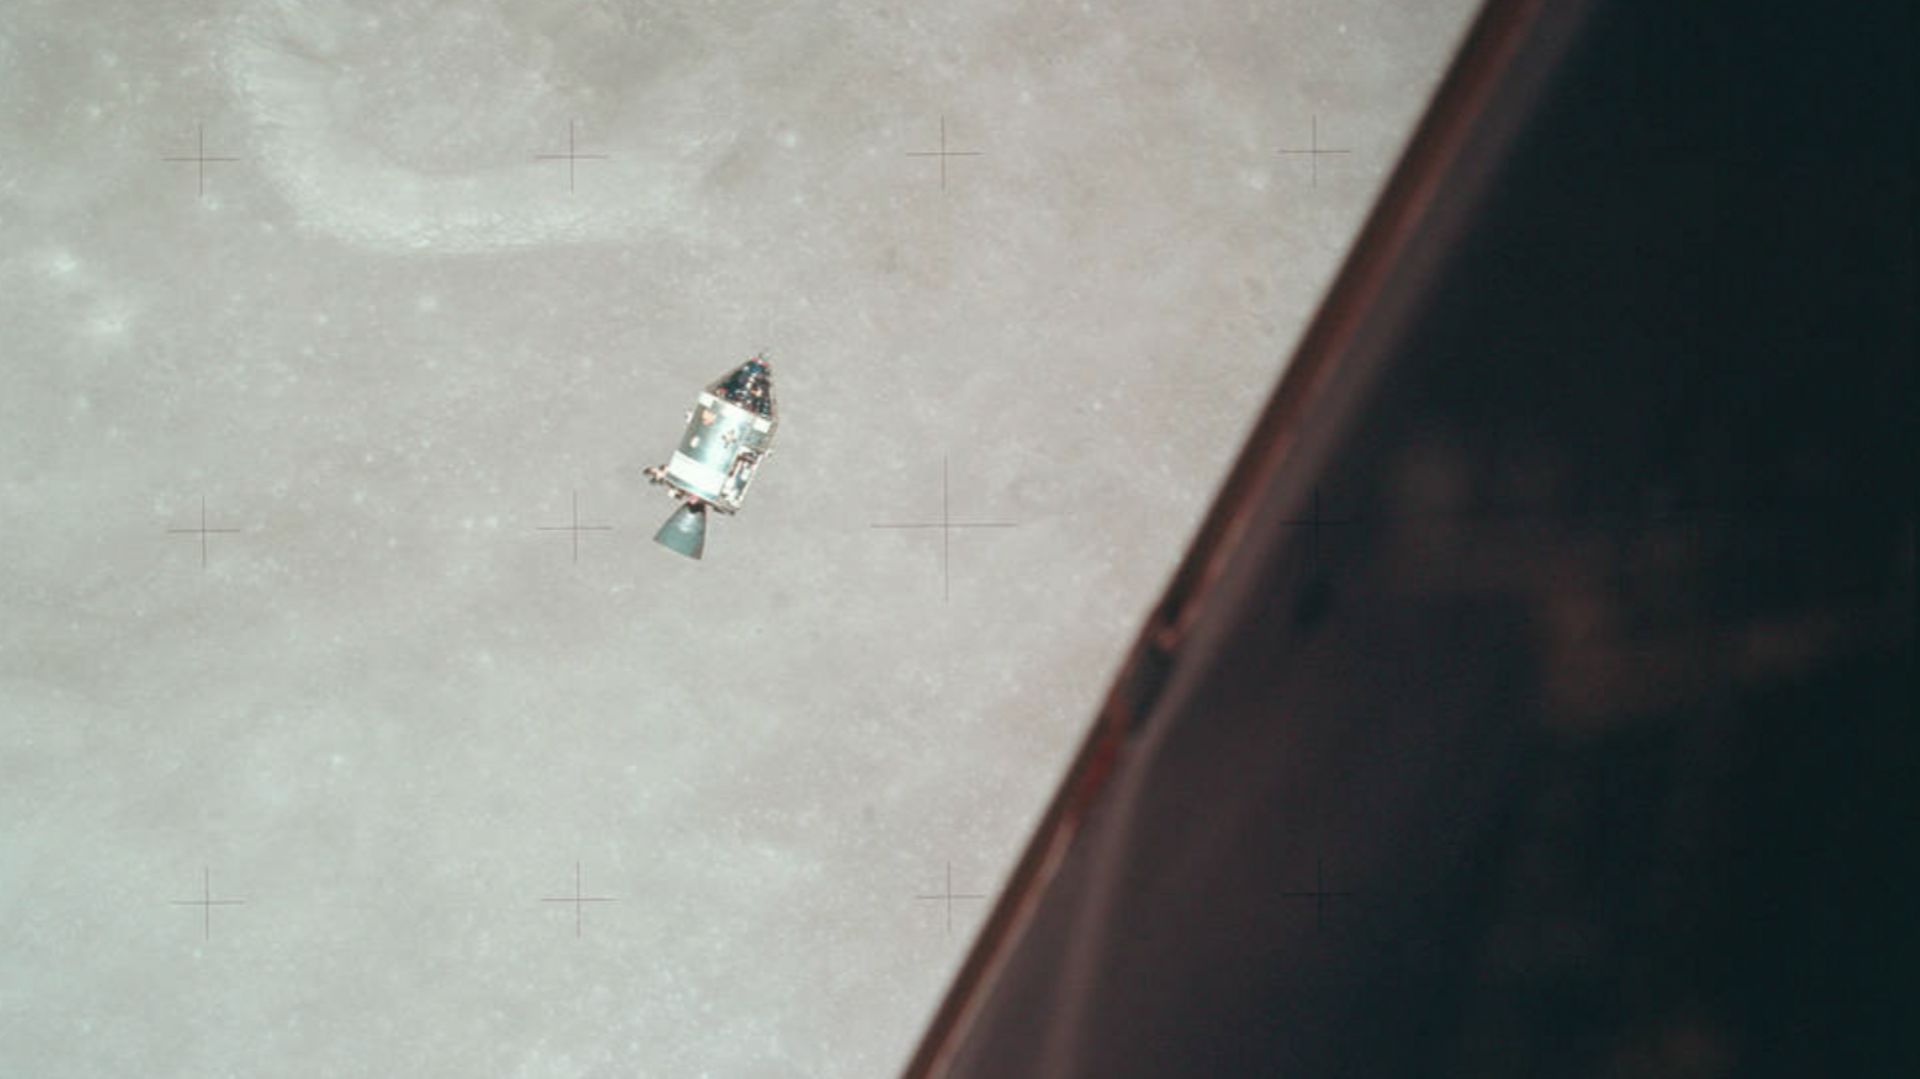 Apollo 17 : il y a 50 ans, l’Homme quittait la Lune pour ne plus y retourner